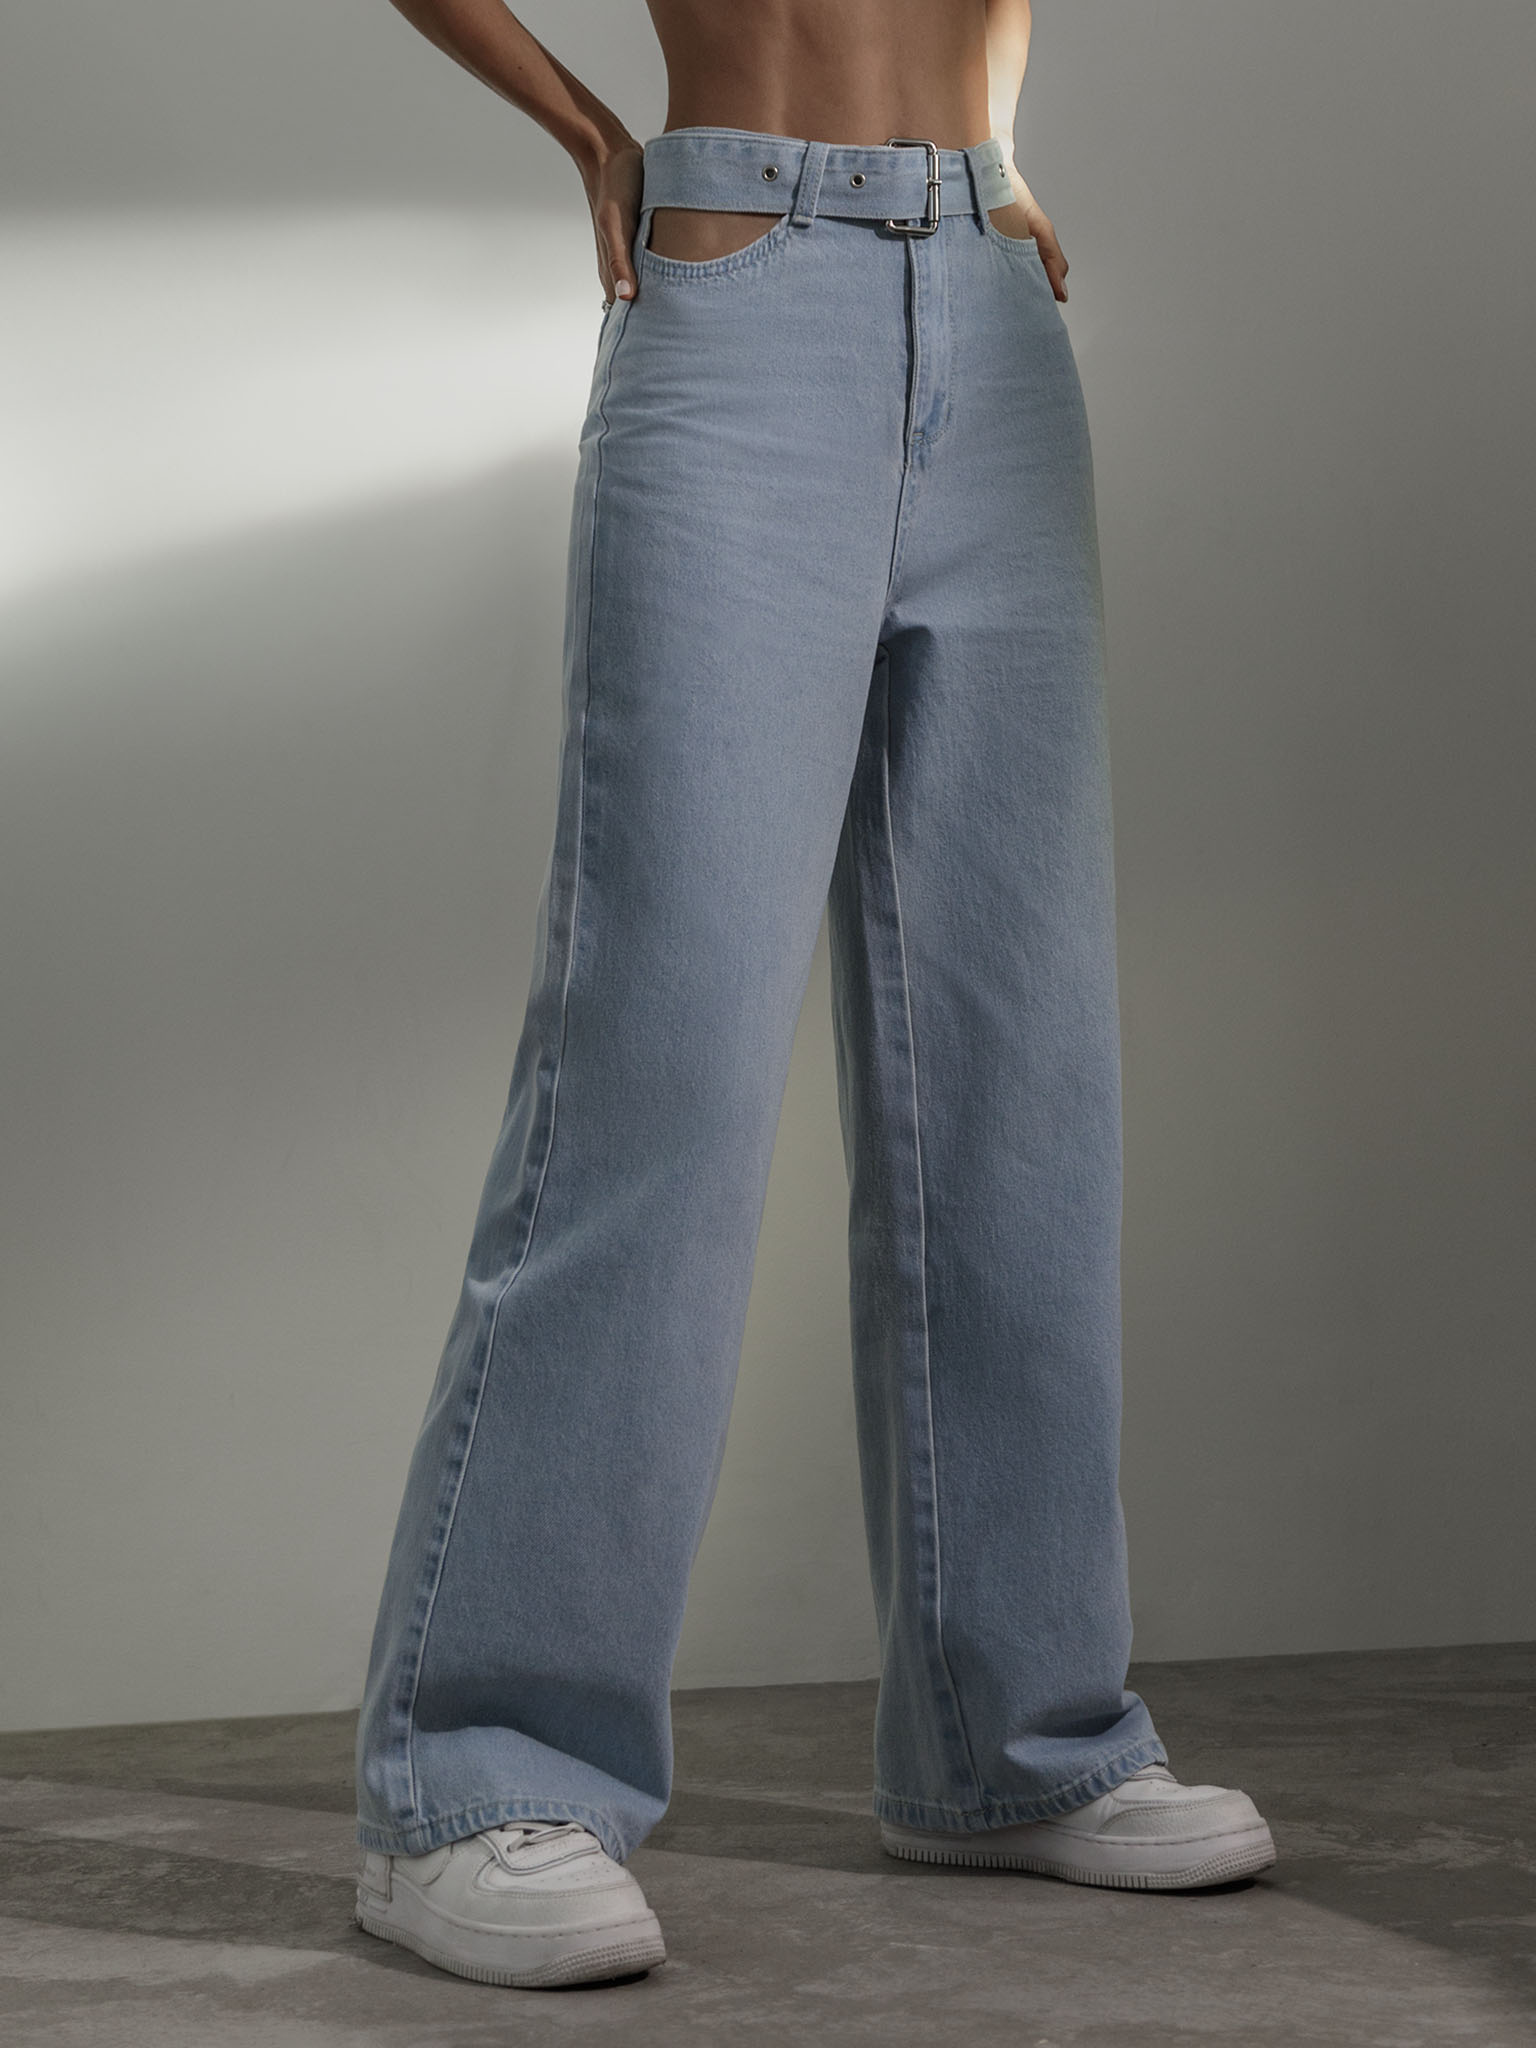 Свободные джинсы с вырезами по бокам и ремнем